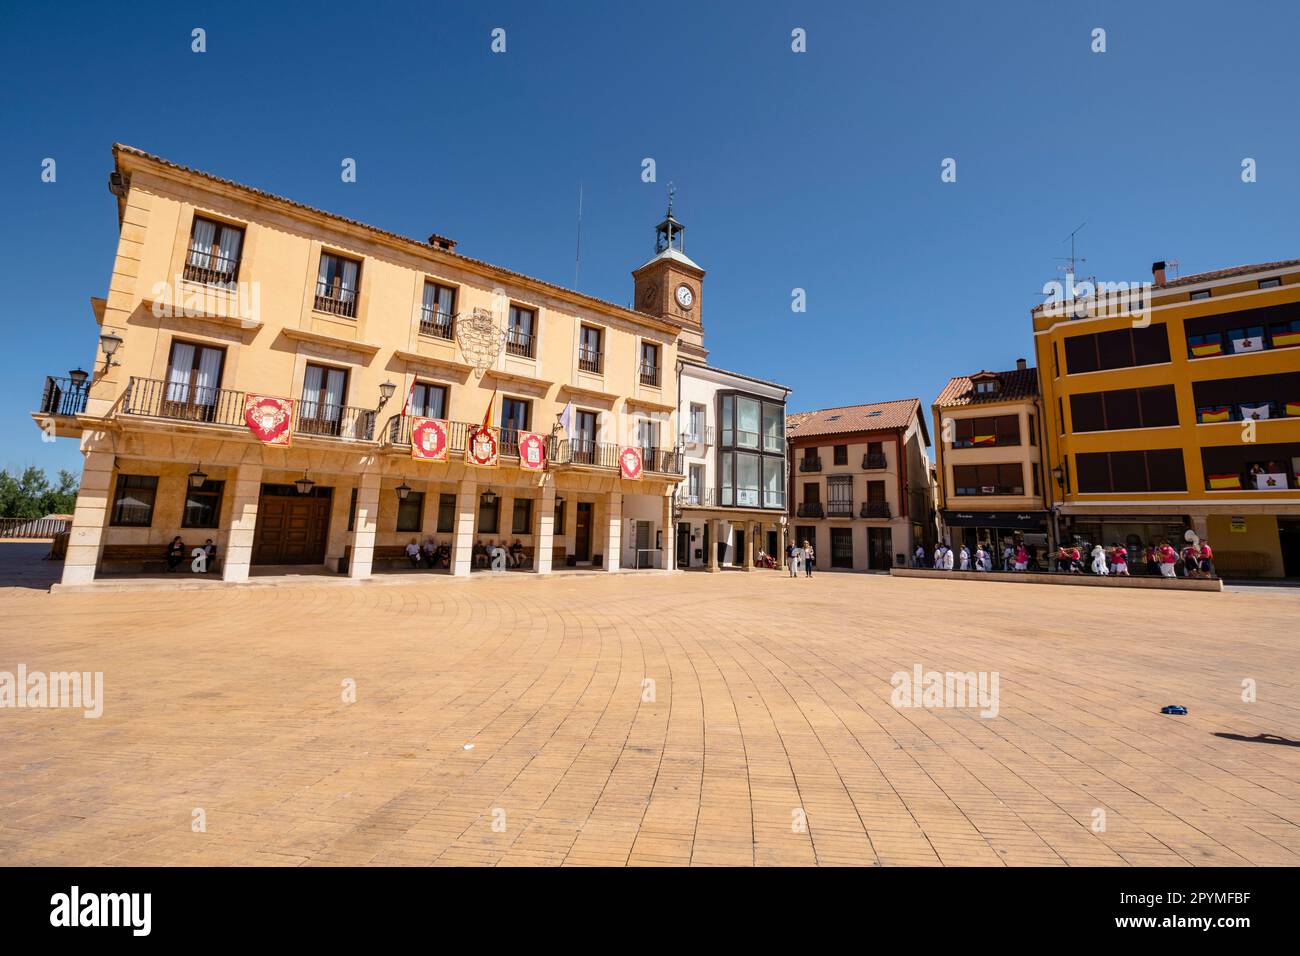 Ayuntamiento,Almazán, Soria,  comunidad autónoma de Castilla y León, Spain, Europe Stock Photo